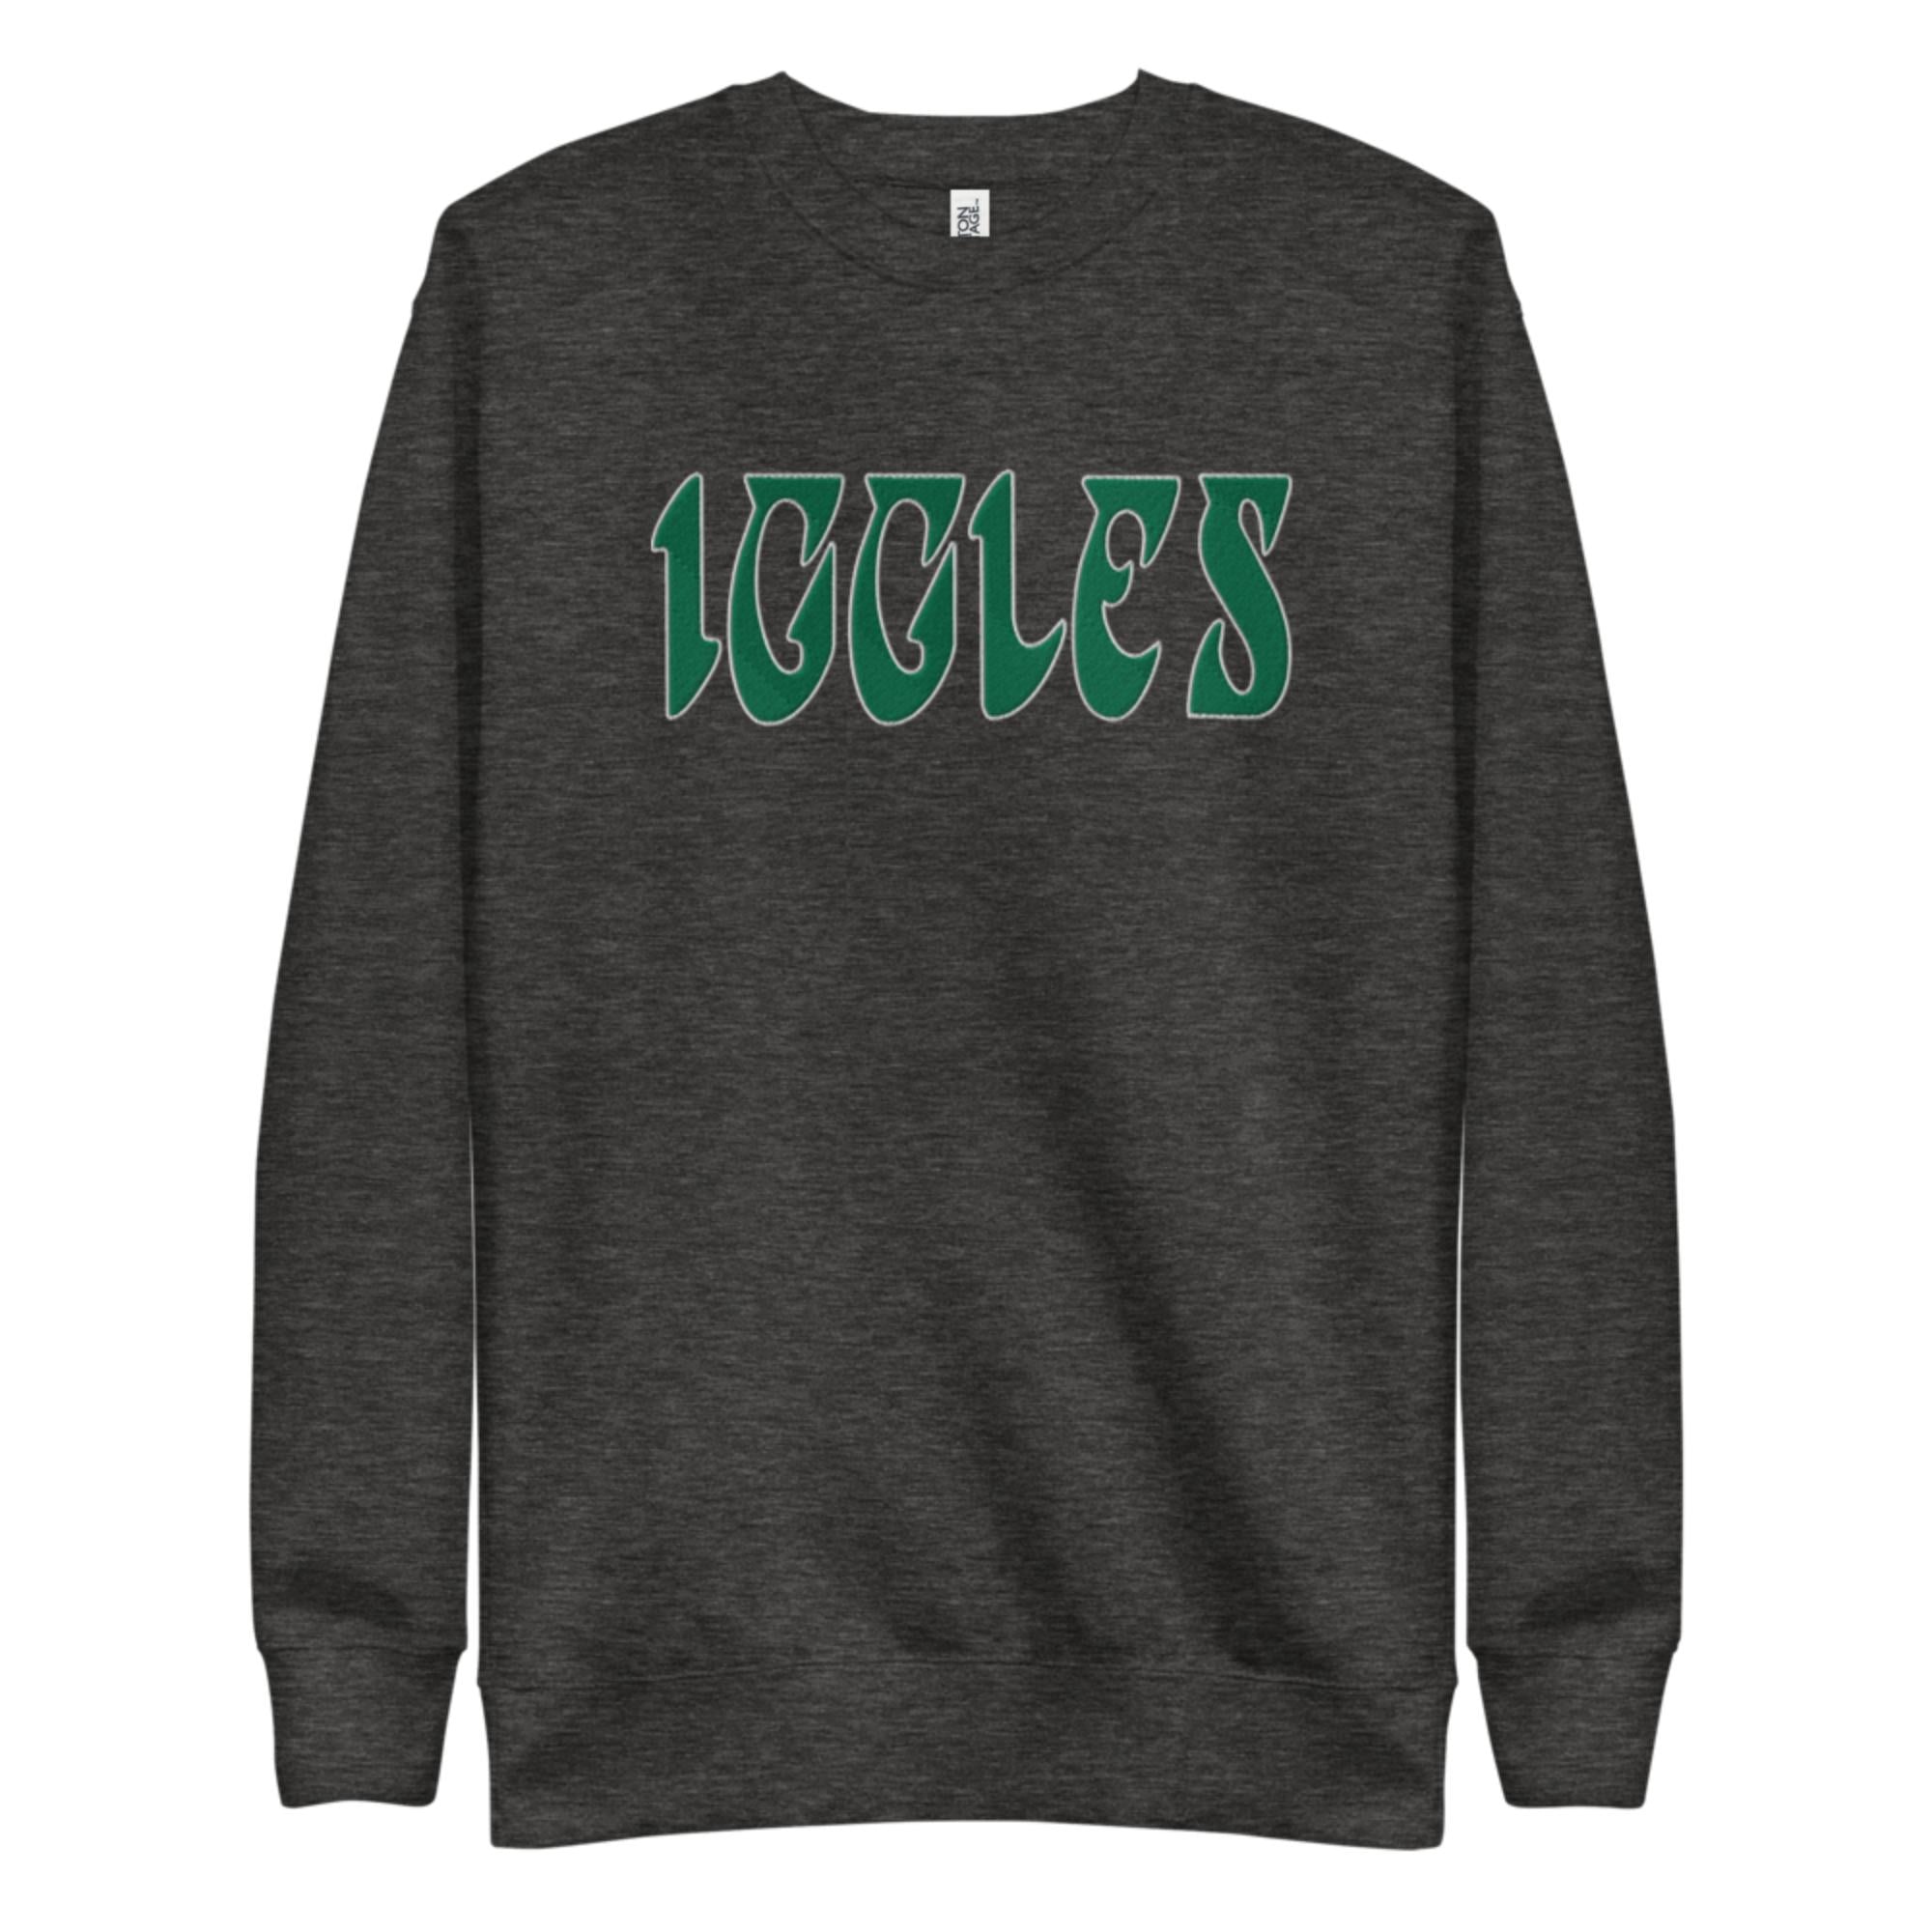 "Iggles" Embroidered Sweatshirt